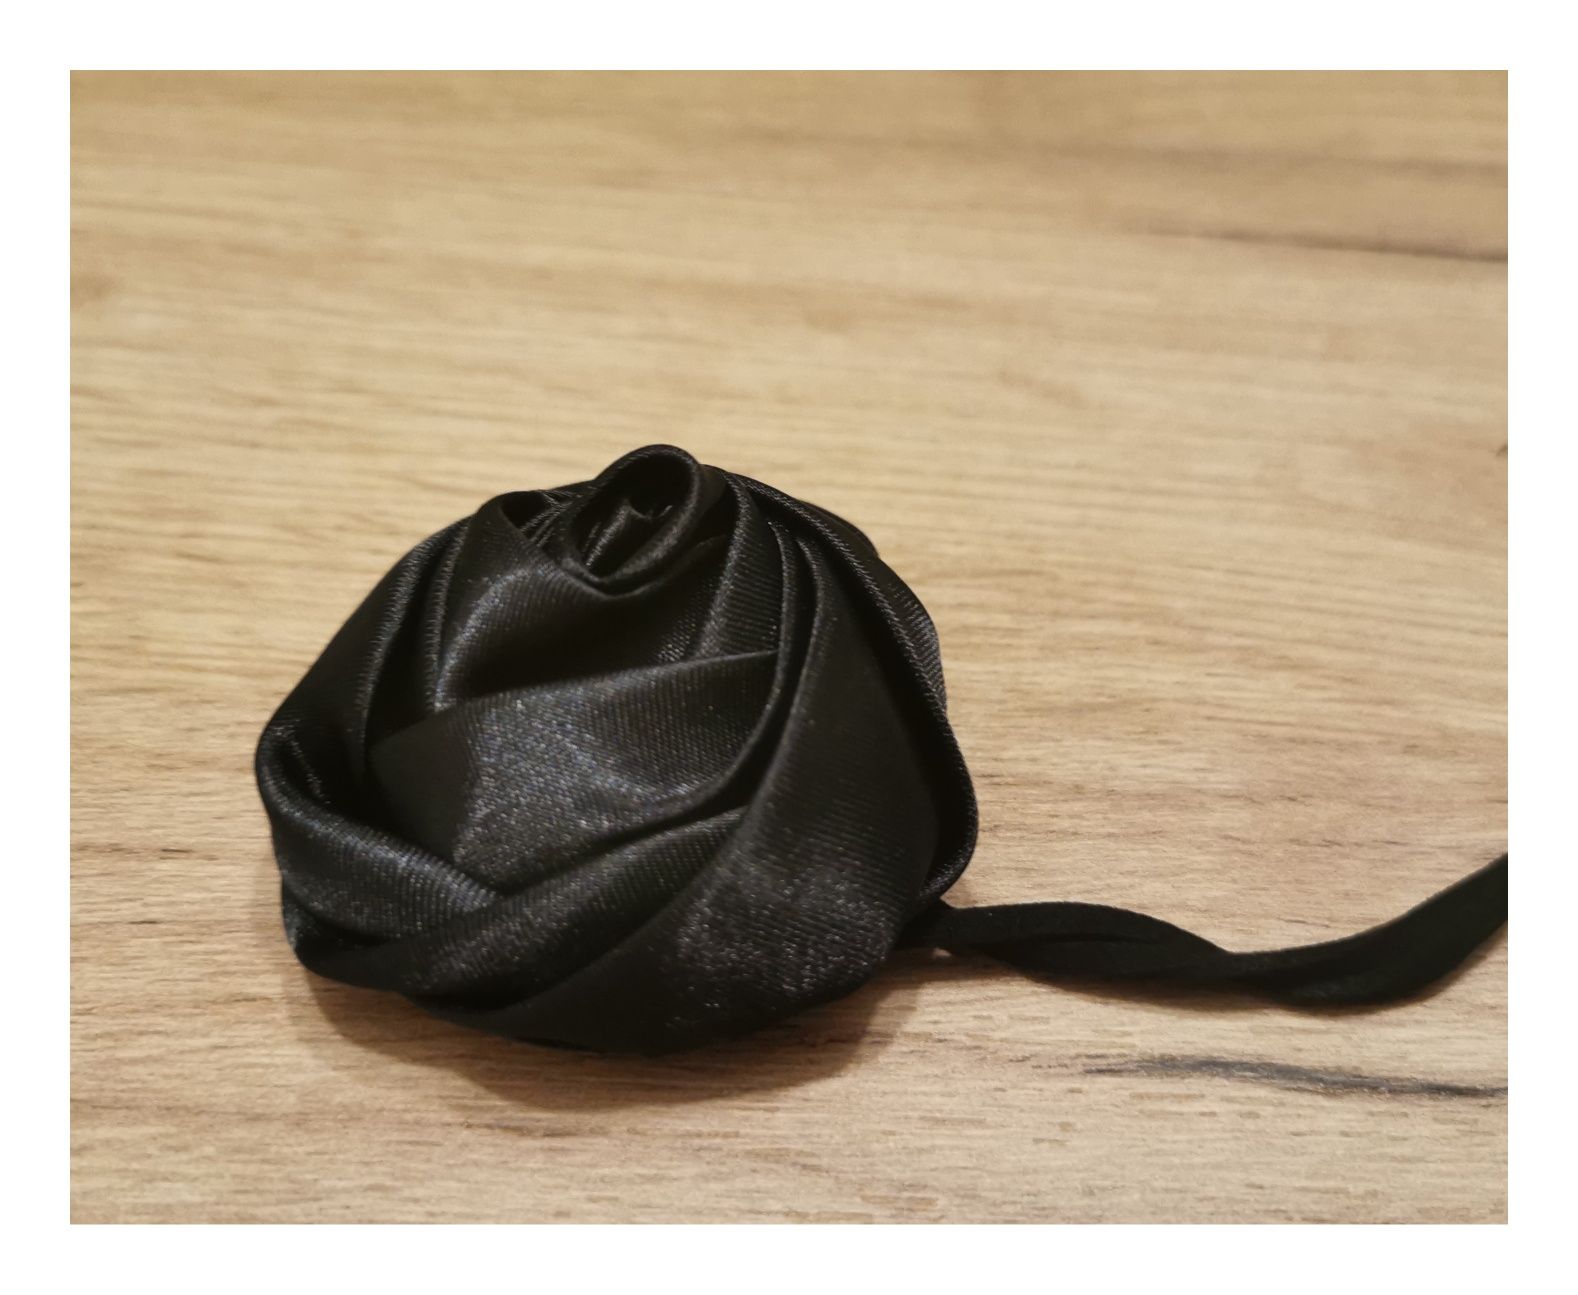 Czarny choker na szyję (dł. 100cm)   #róża #coquette #kobiecy